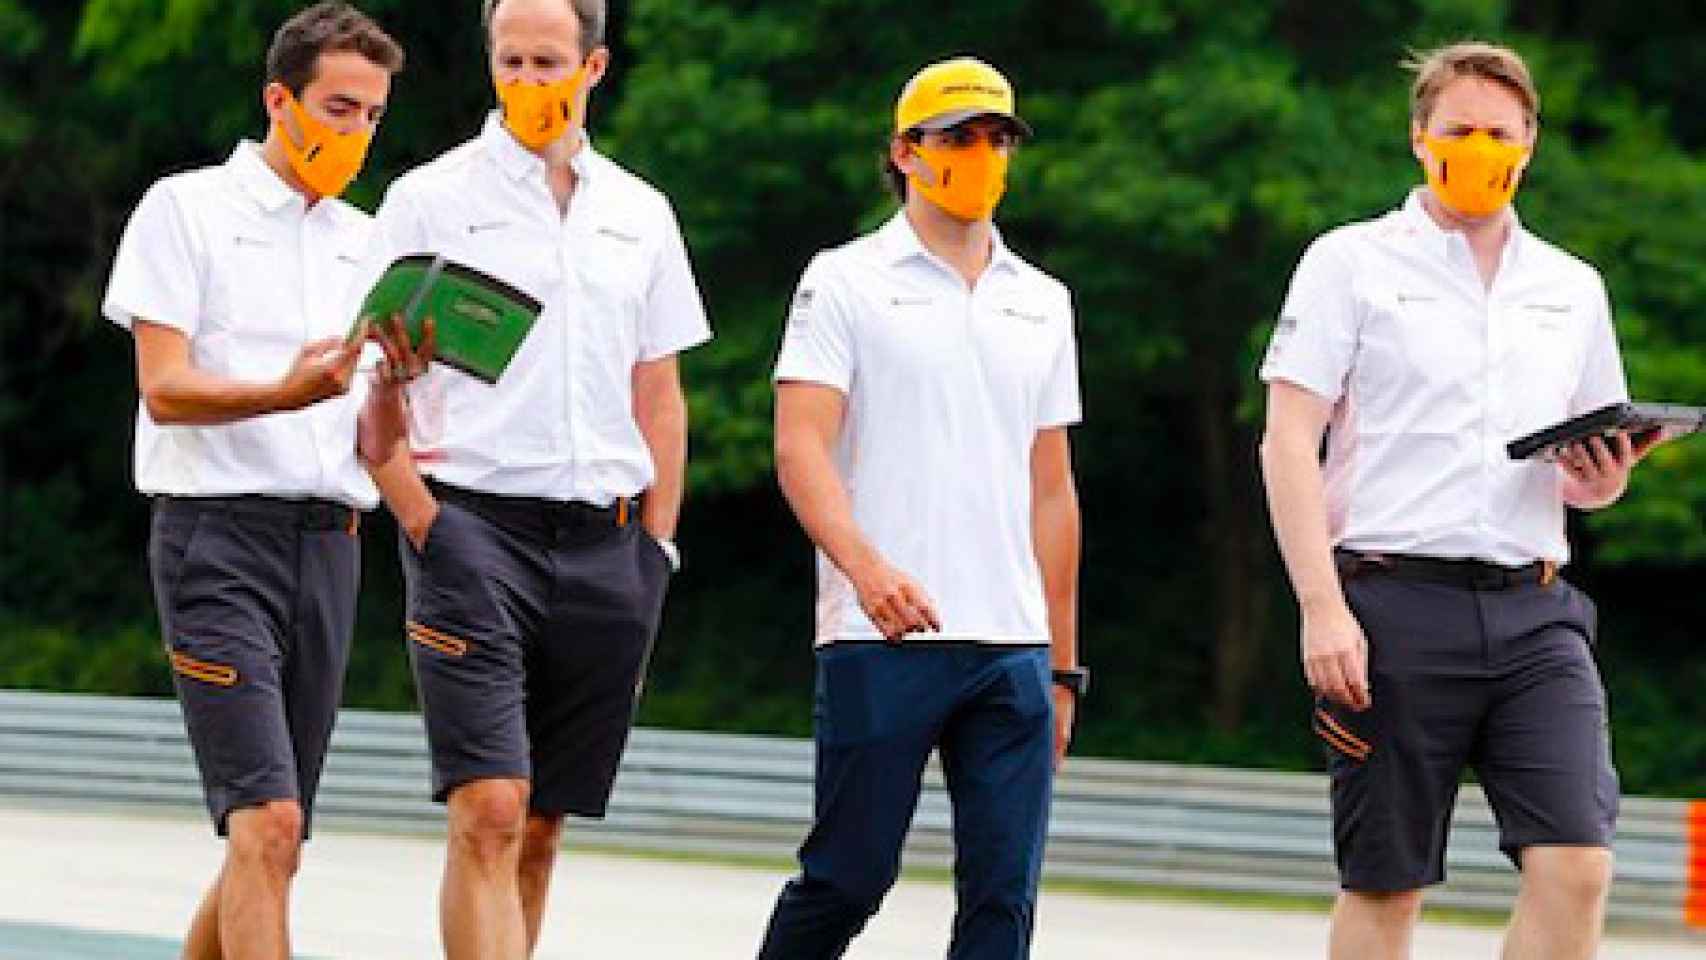 El equipo de Carlos Sainz reconoce el GP de Hungría